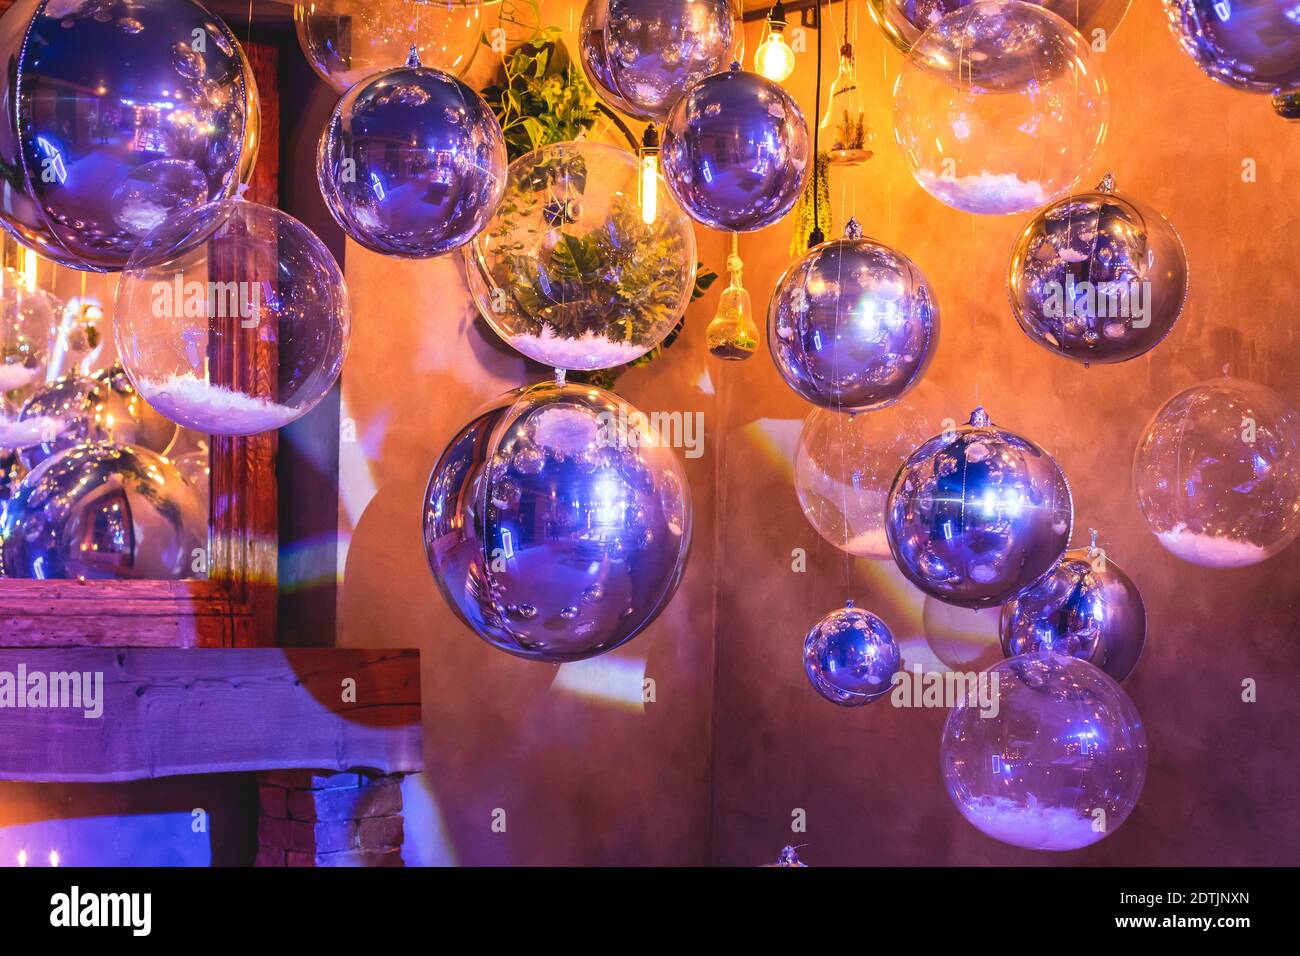 Elementi interni decorativi della sala banchetti del ristorante con diversi palloncini di elio multicolore, in occasione di un evento aziendale interno o di un matrimonio Foto Stock